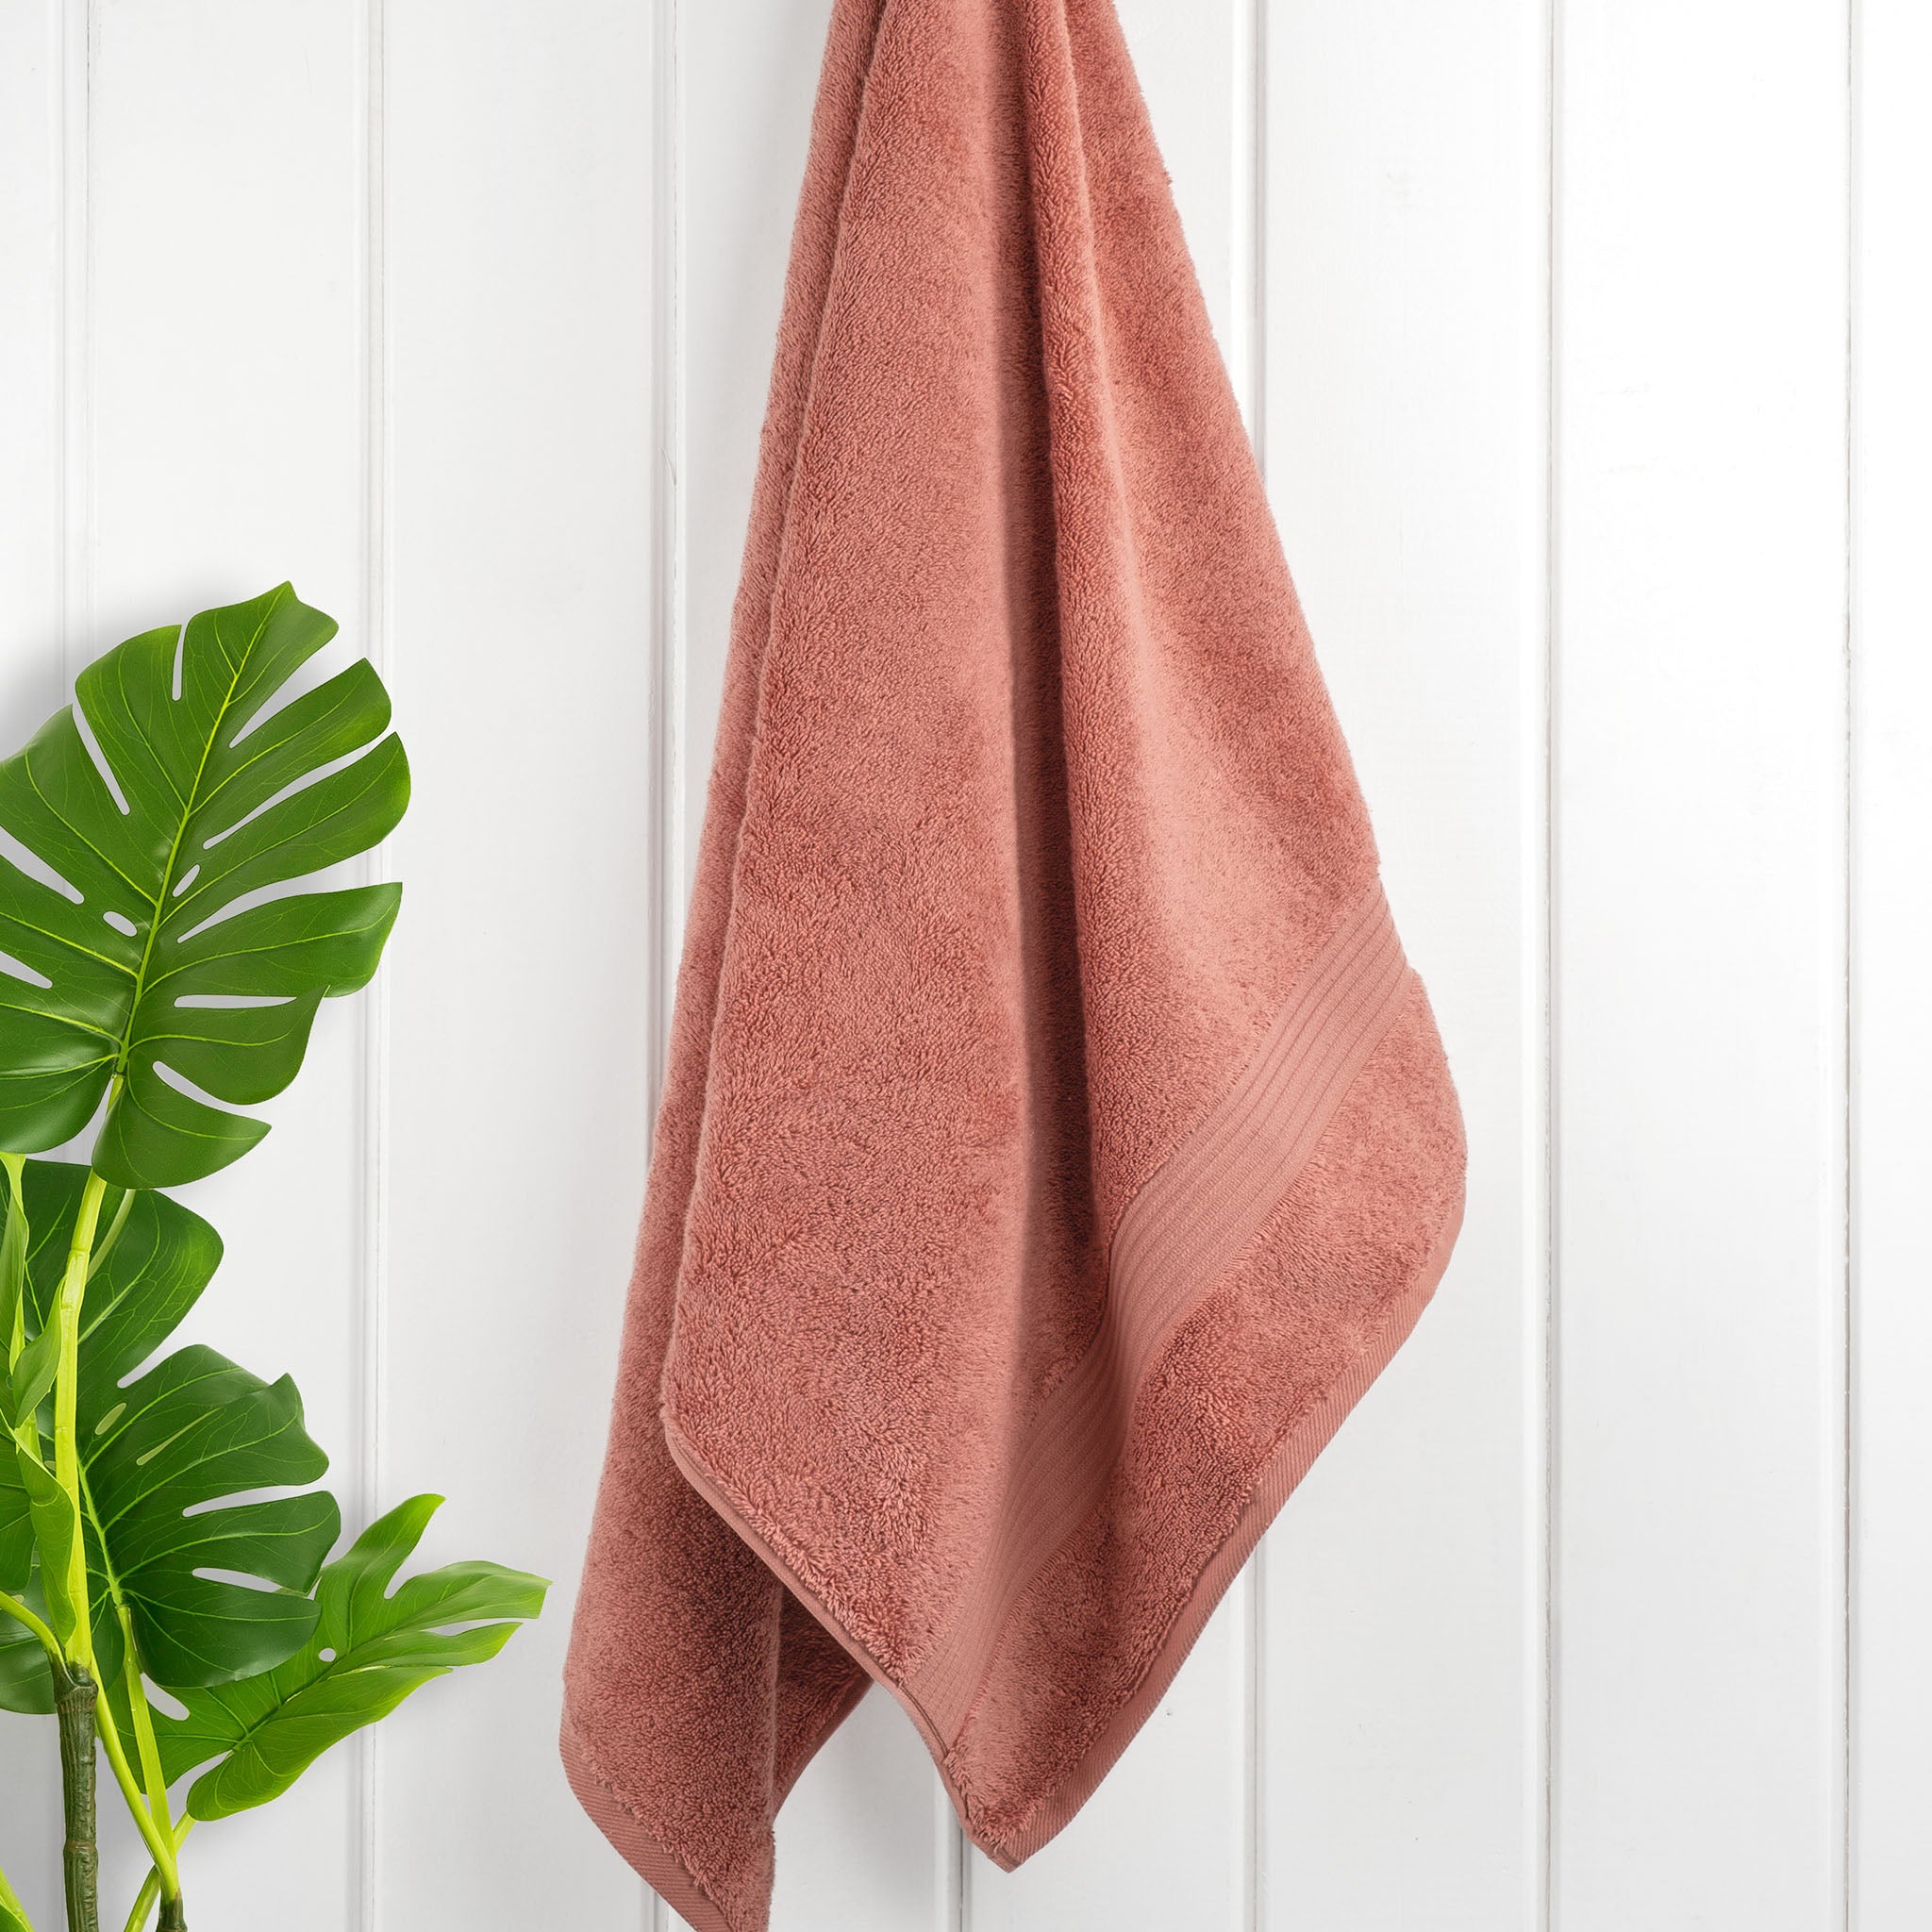 American Soft Linen Bekos 100% Cotton Turkish Towels, 4 Piece Bath Towel Set -coral-02